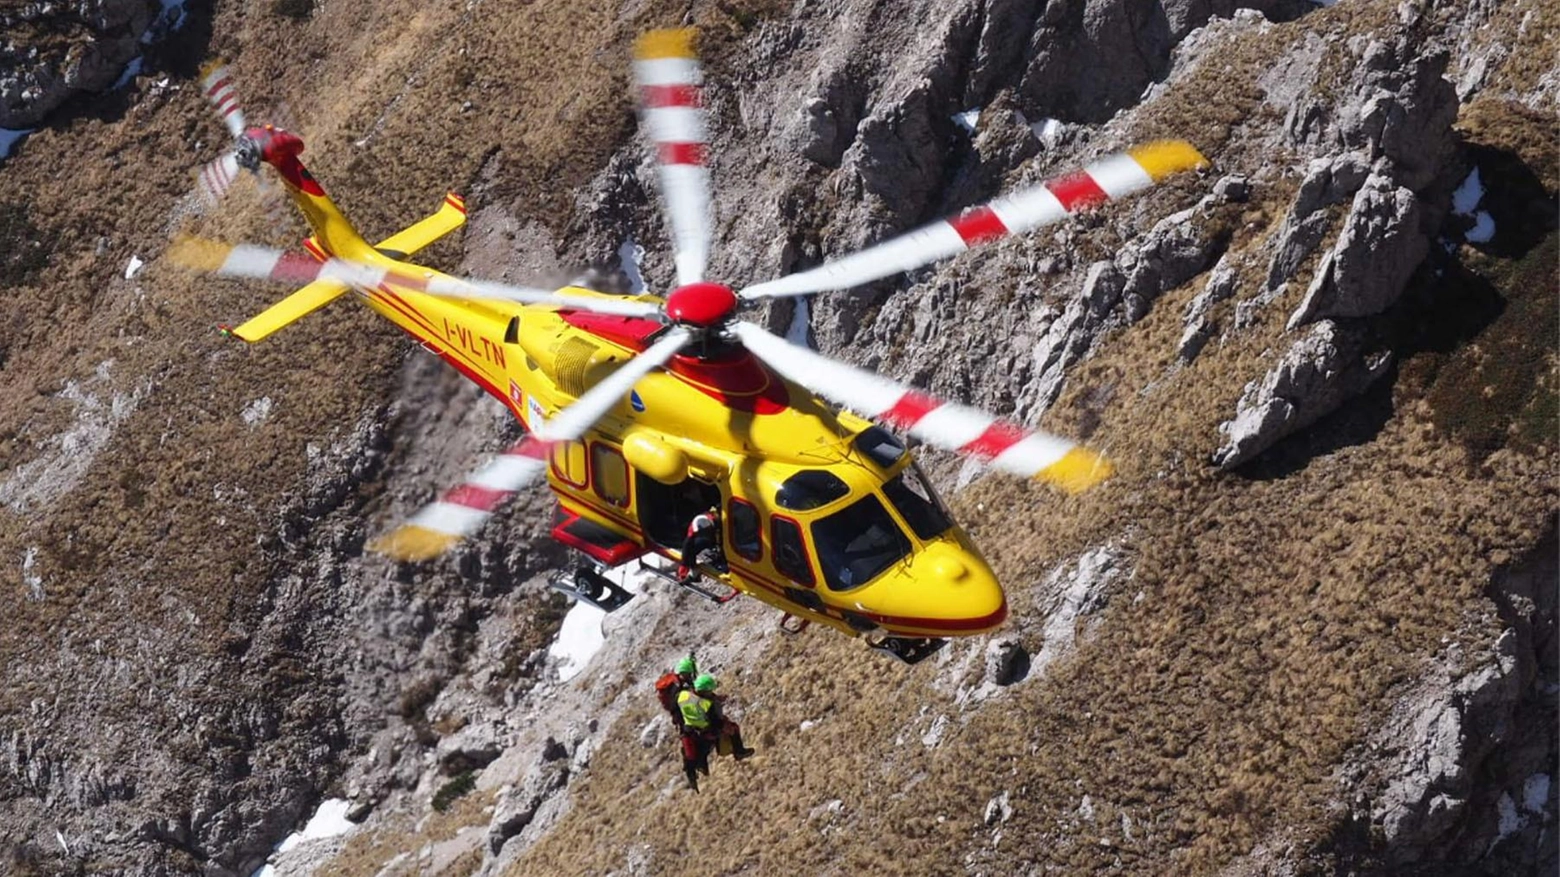 Il Soccorso alpino della VII Delegazione Valtellina - Valchiavenna ha salvato due alpinisti in difficoltà sul Disgrazia e al passo del Barbacan, con interventi in elicottero a oltre 3000 metri di quota.